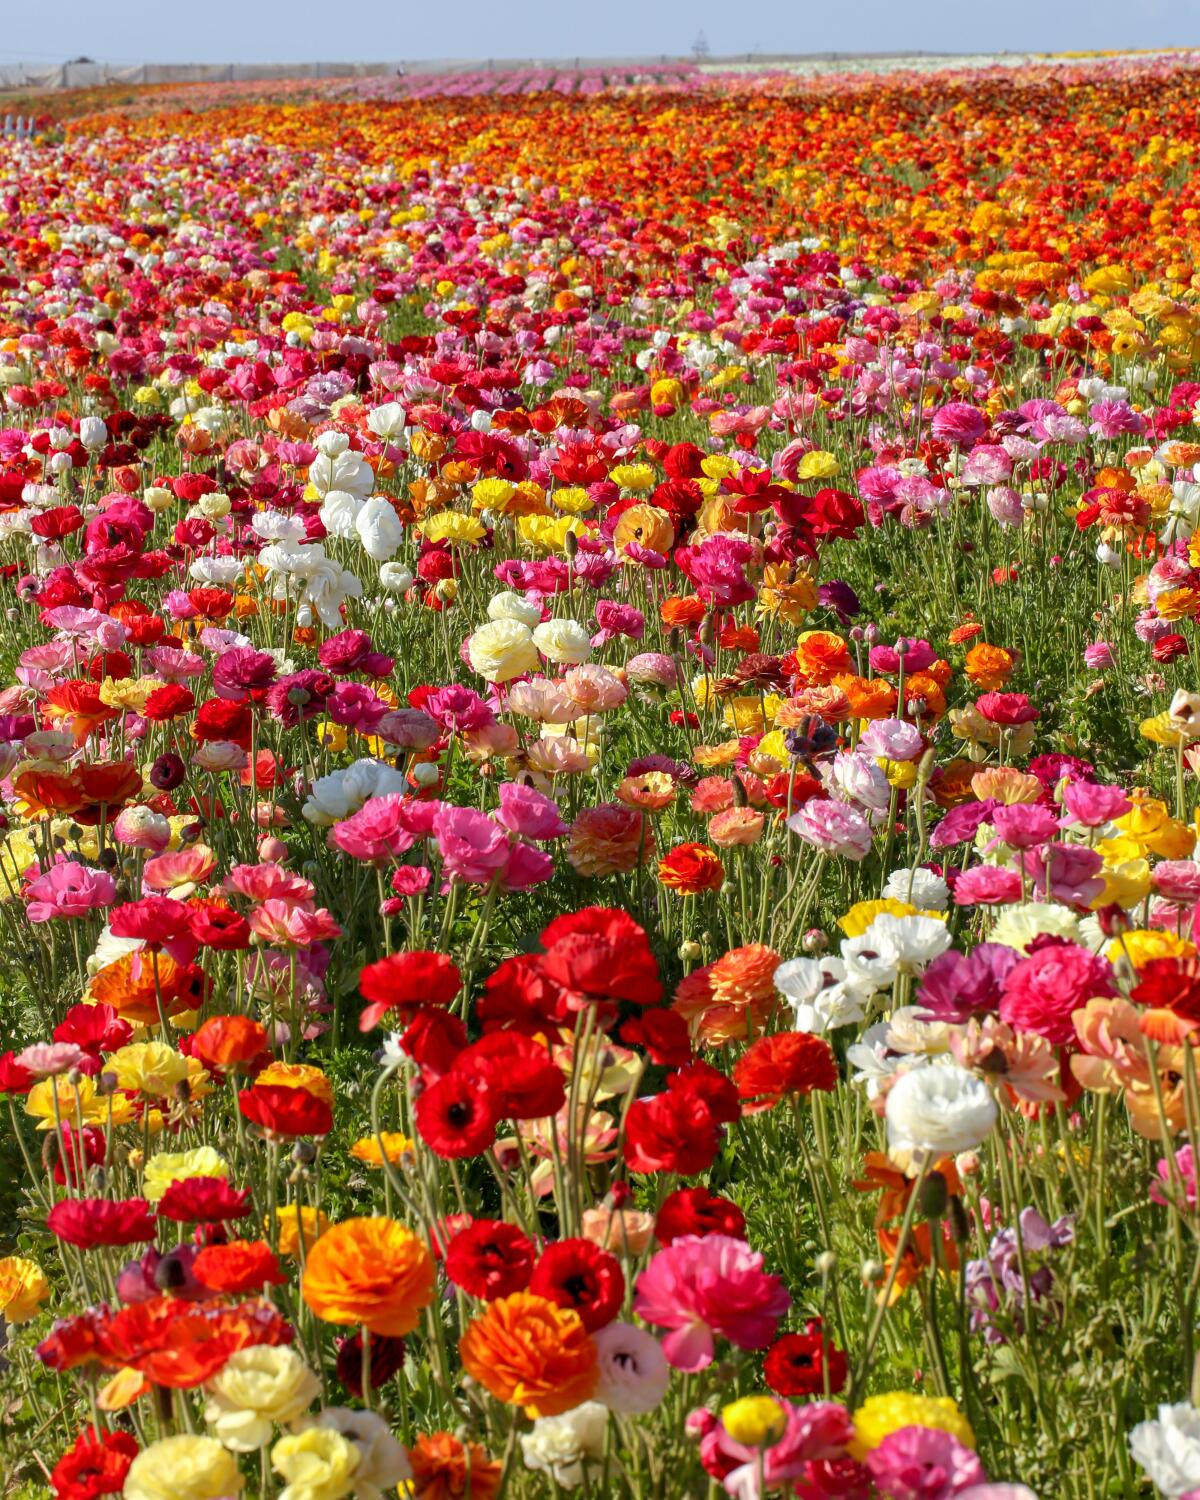 Carlsbad's Instagram-ready flower fields open March 1 - Los